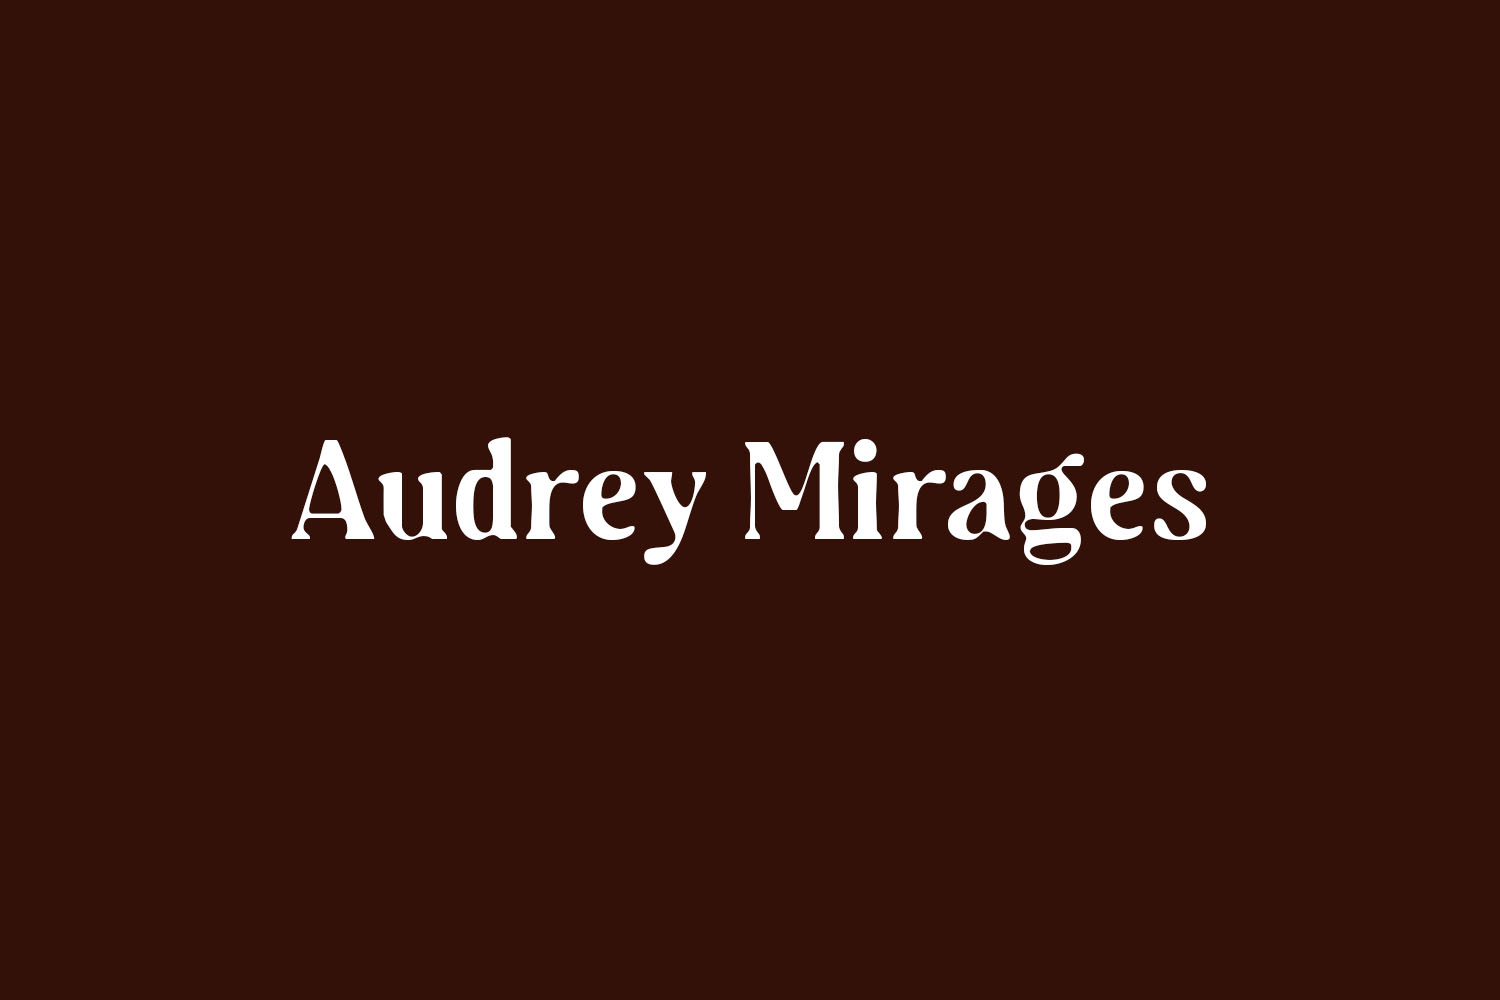 Audrey Mirages Free Font